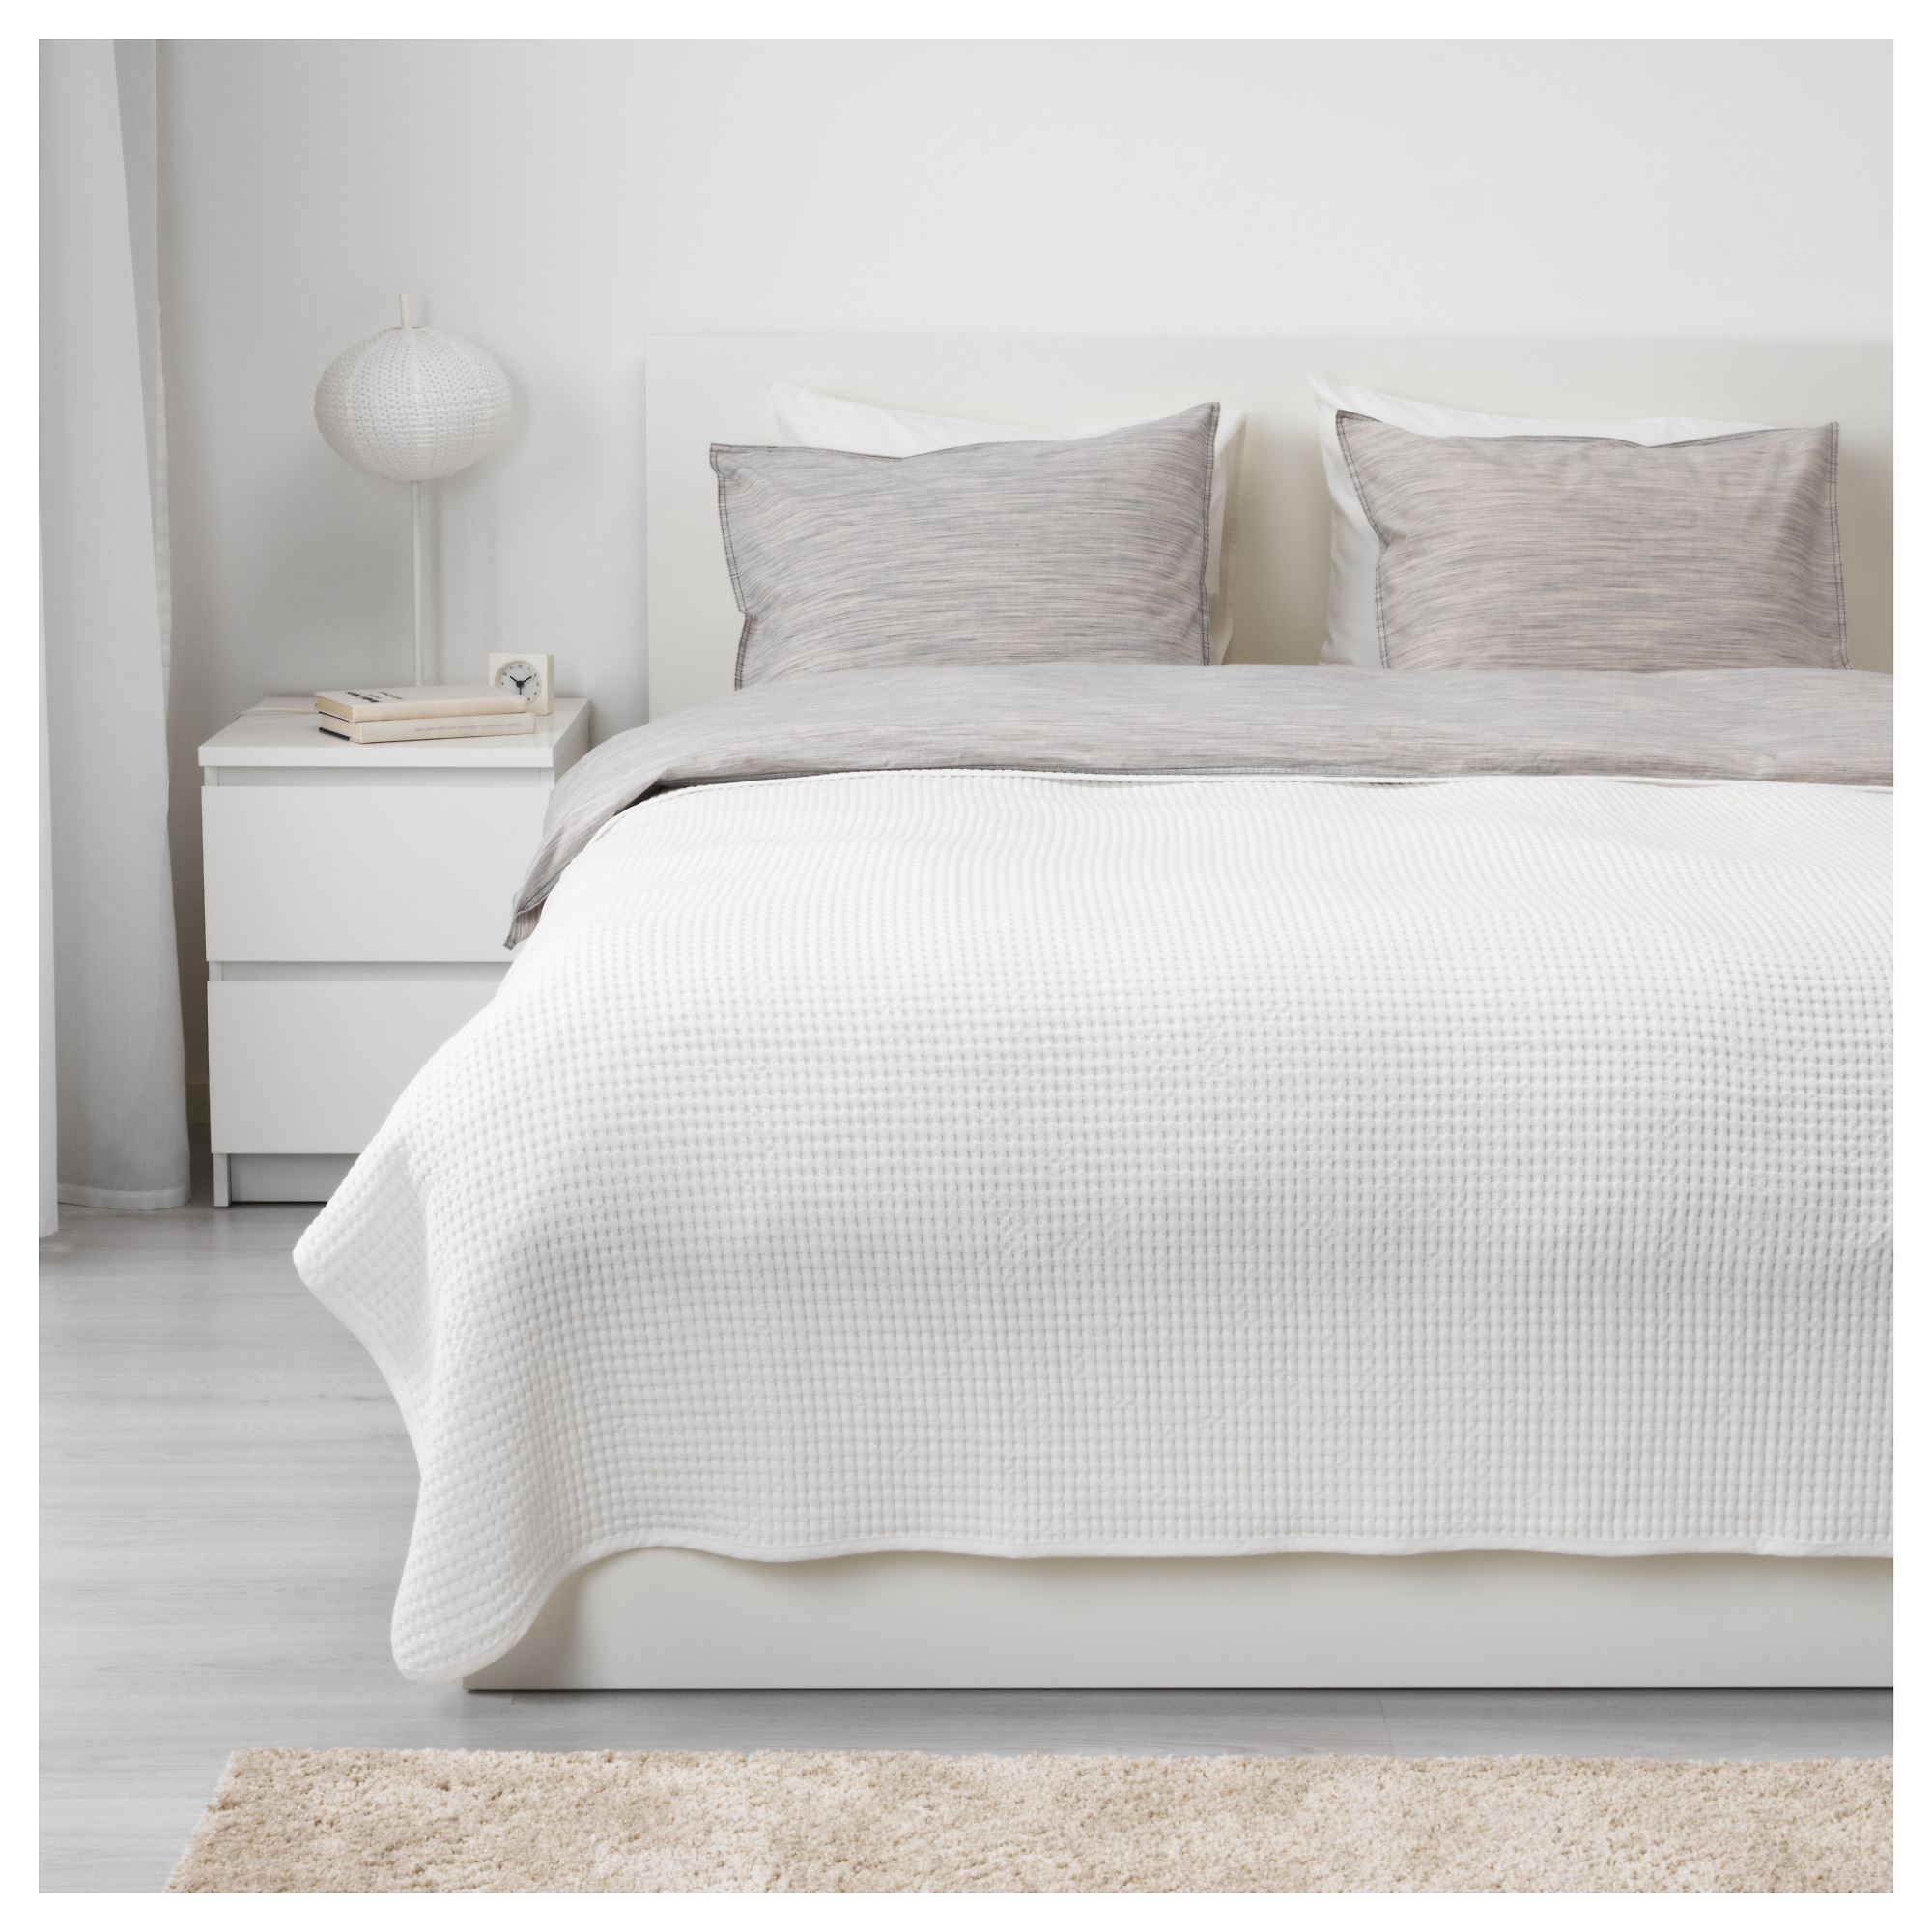 VARELD çift kişilik yatak örtüsü, beyaz, 230x250 cm